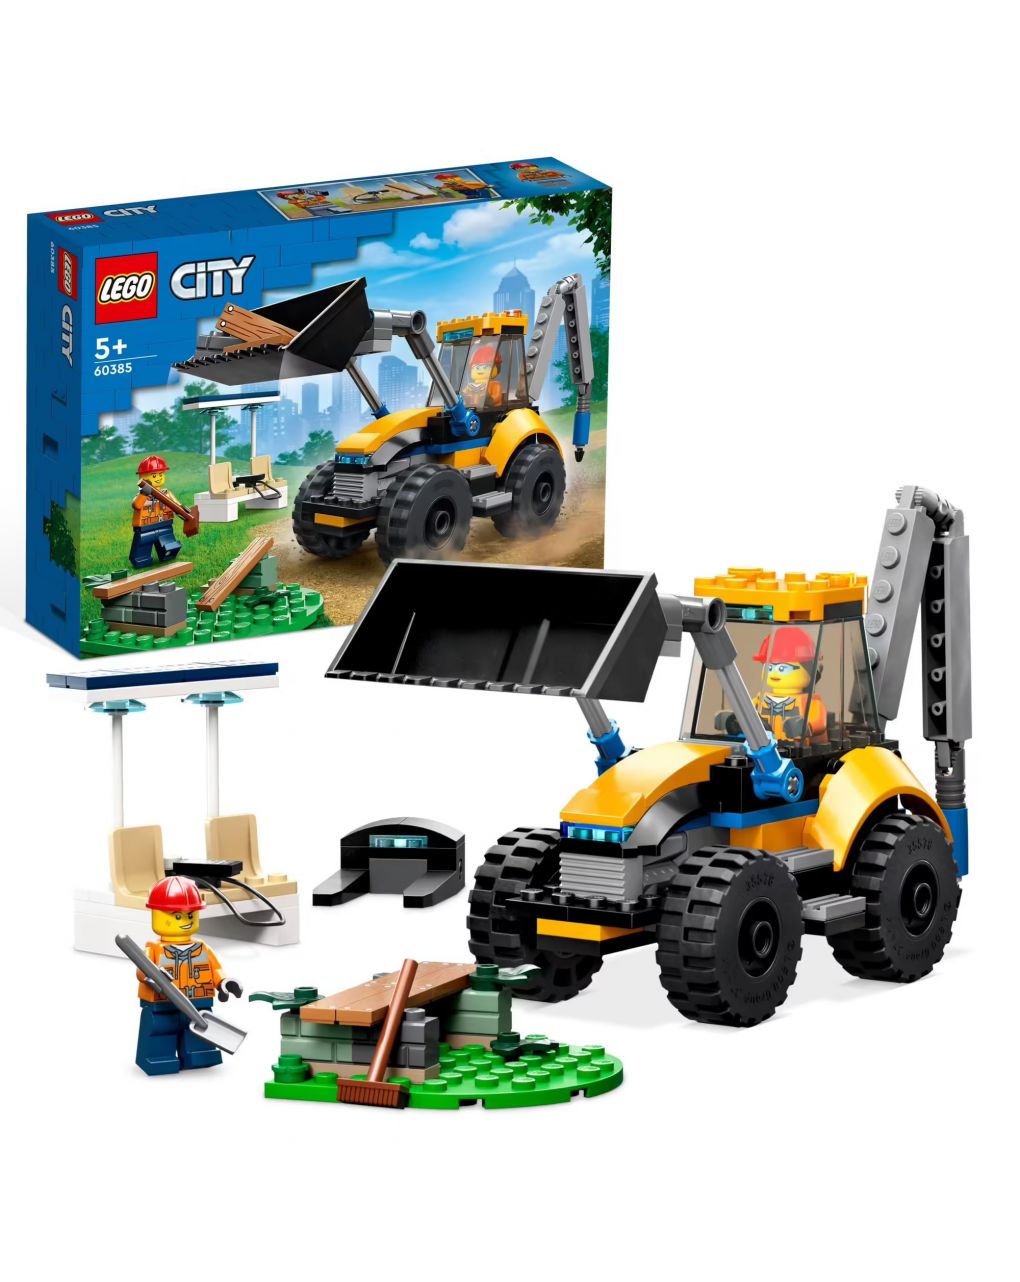 Scavatrice per costruzioni - escavatore giocattolo con minifigure - lego city - LEGO